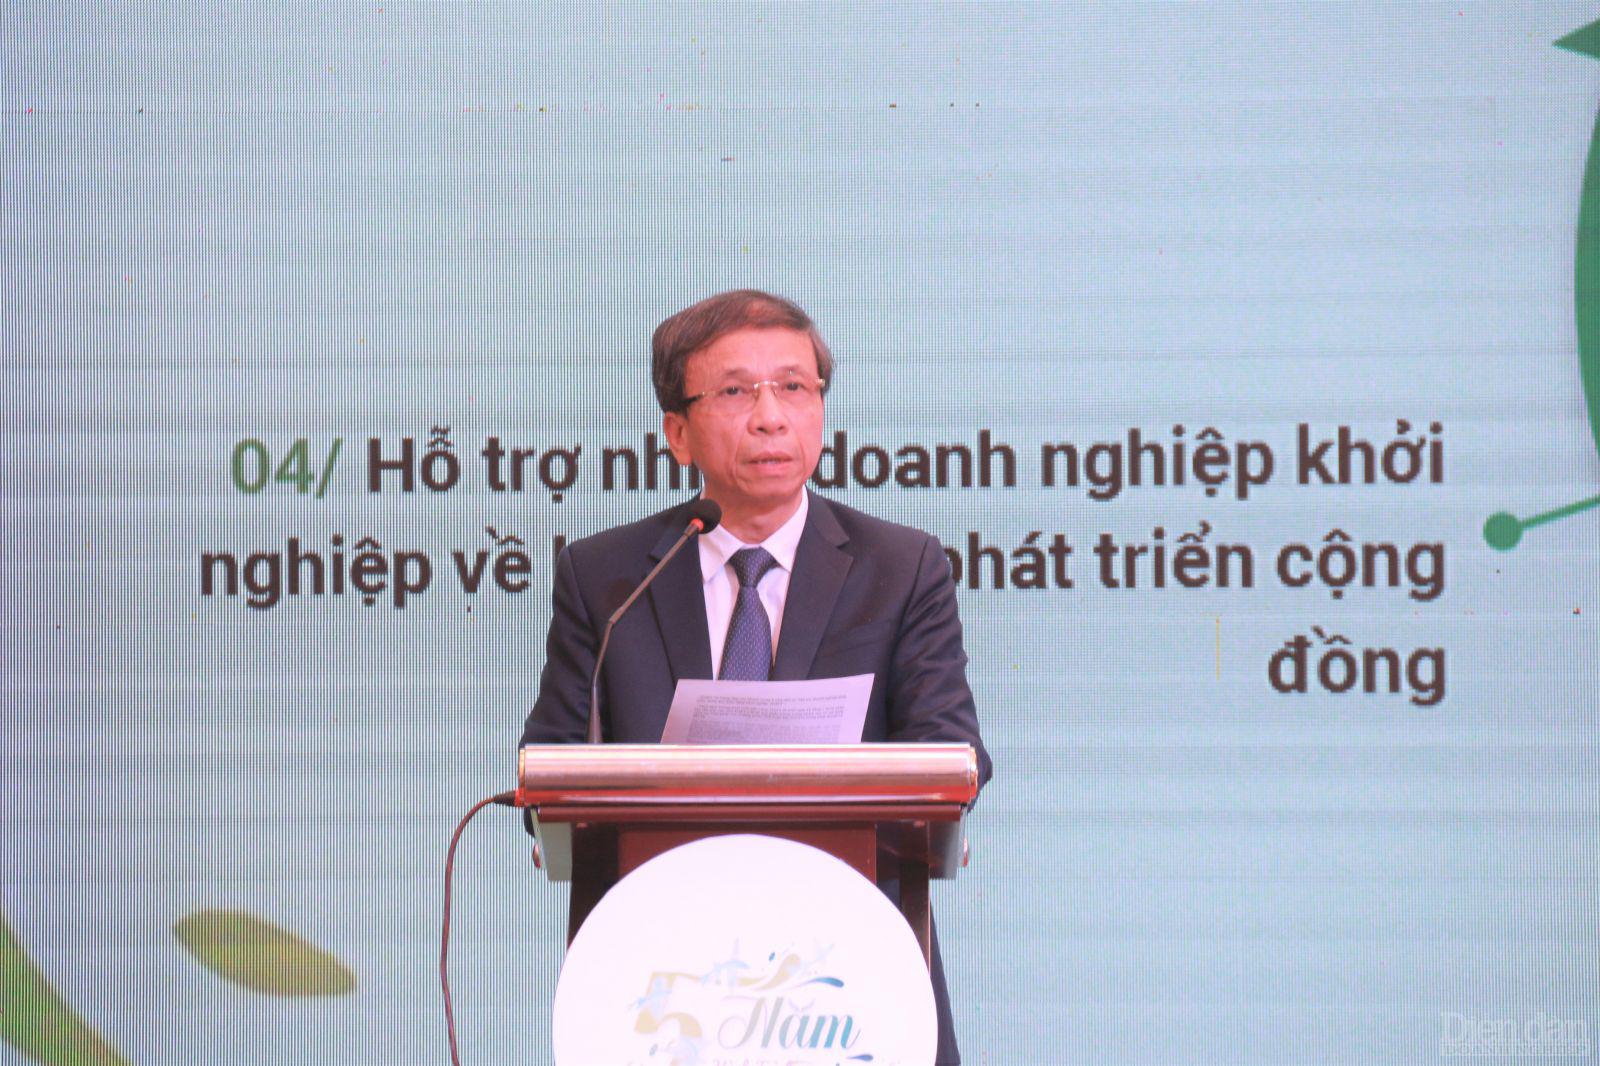  Ông Võ Duy Khương - Chủ tịch HĐTV DNES phát biểu tại buổi lễ kỷ niệm.